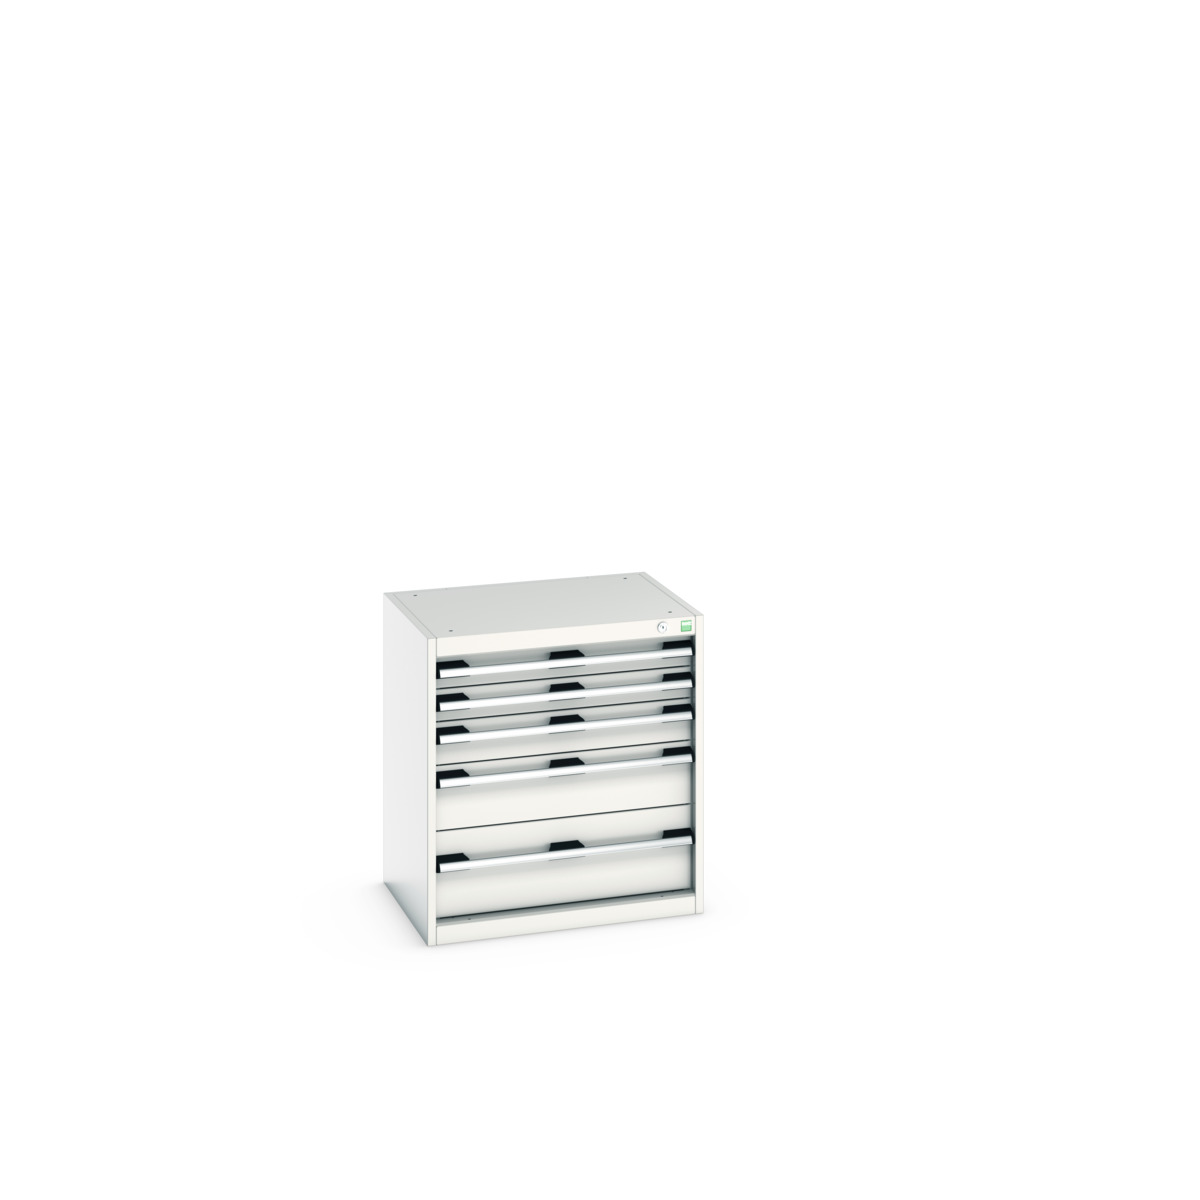 40011042.16V - cubio drawer cabinet